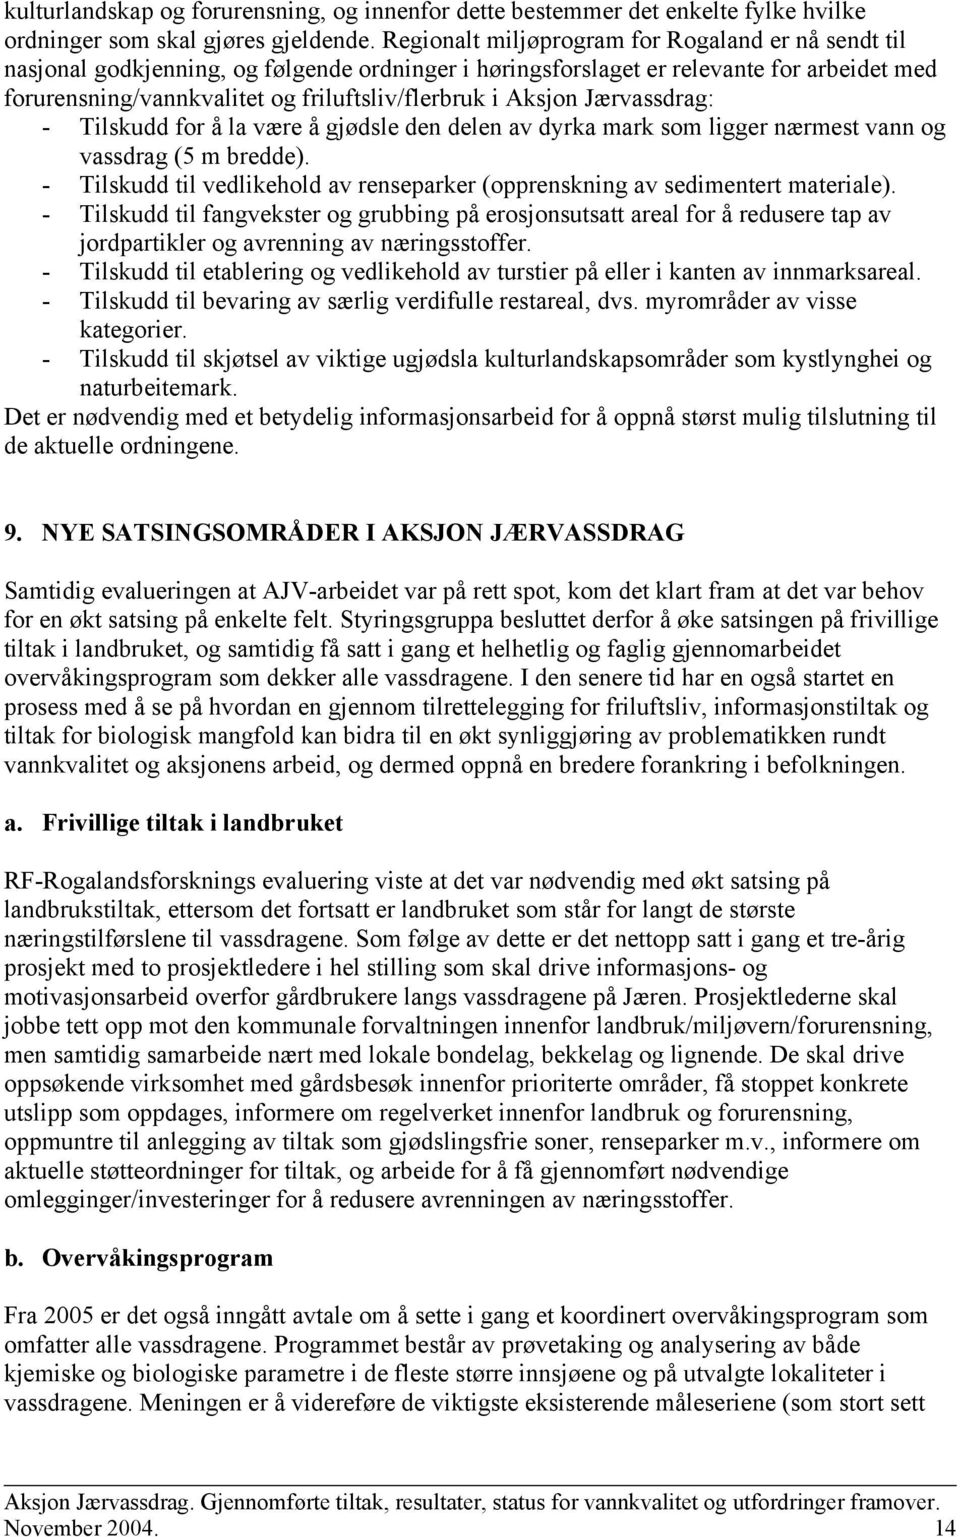 Aksjon Jærvassdrag: - Tilskudd for å la være å gjødsle den delen av dyrka mark som ligger nærmest vann og vassdrag (5 m bredde).